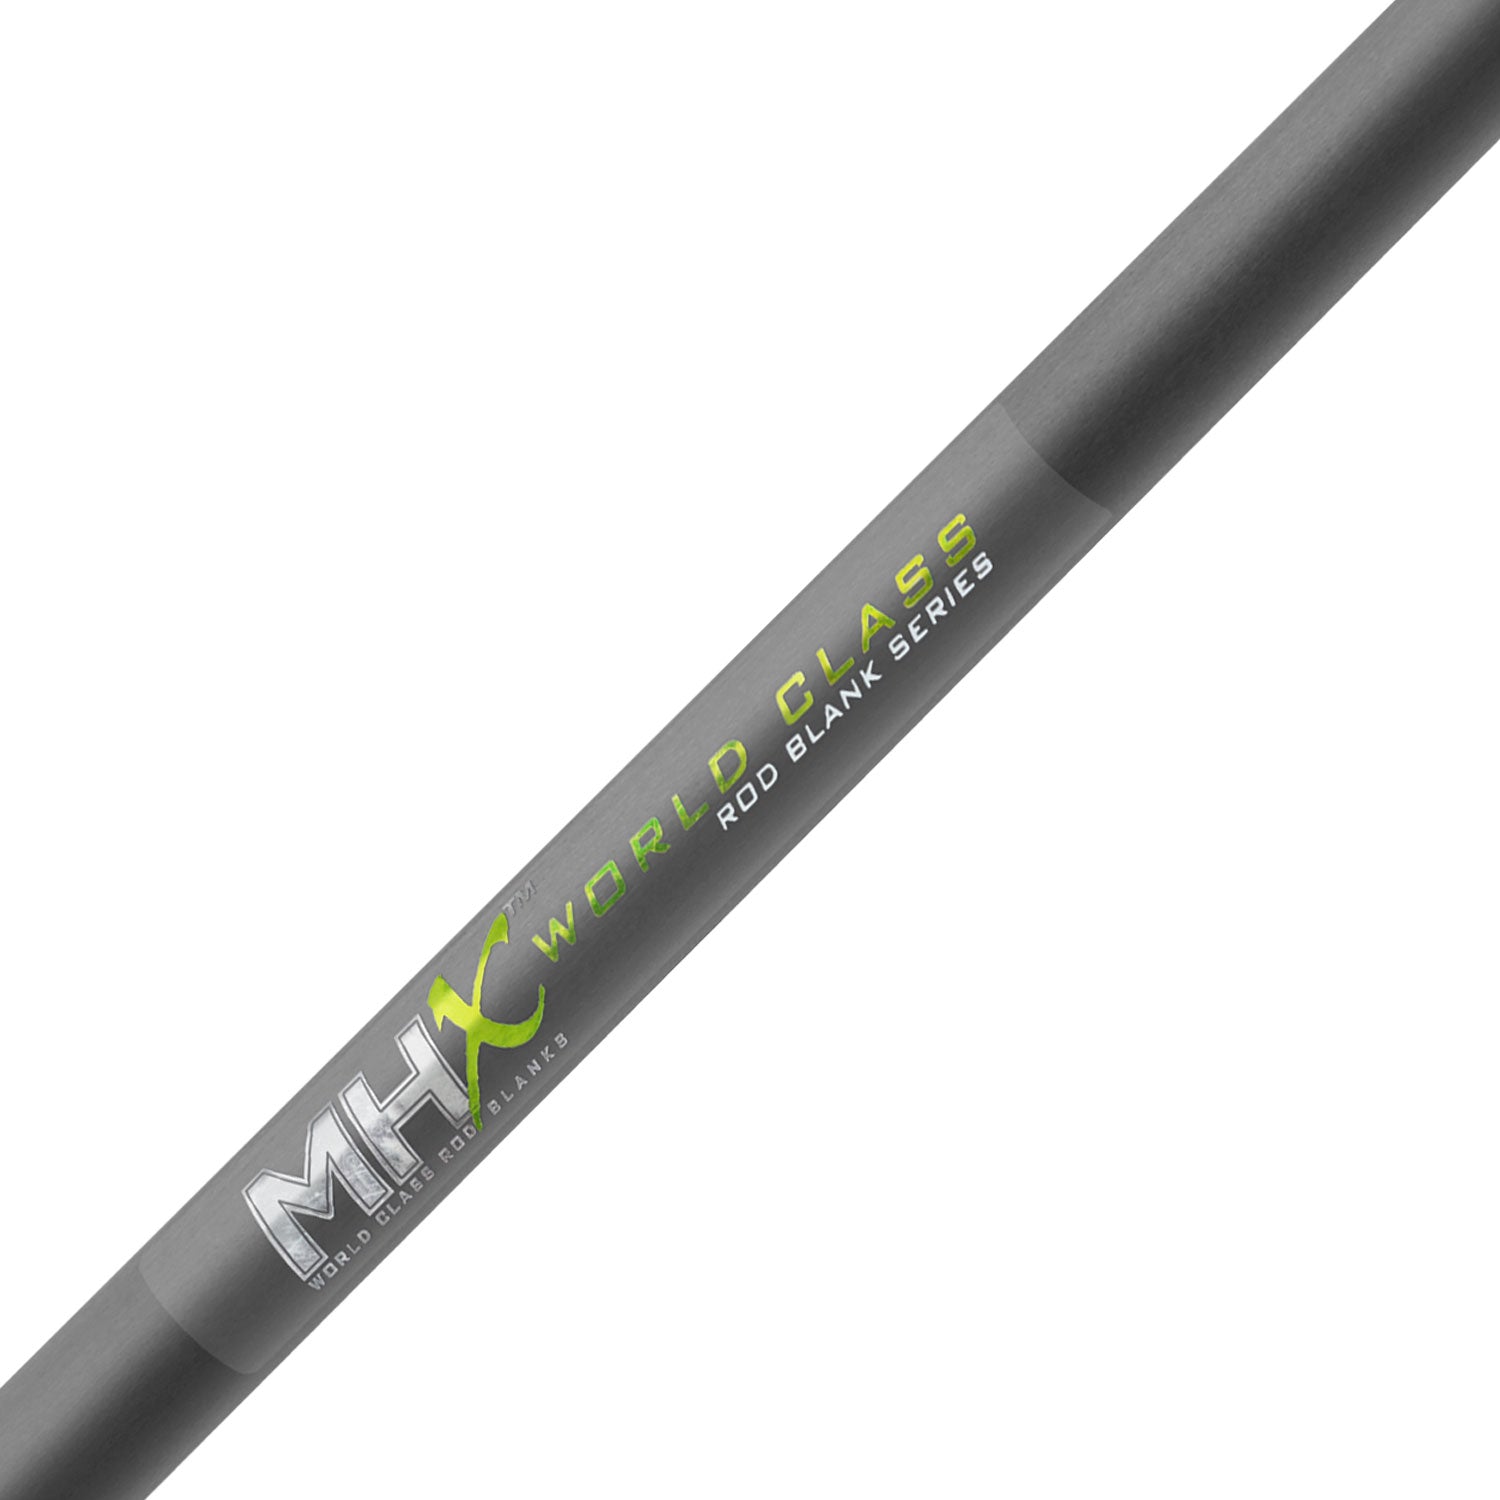 MHX 7'6" Med-Heavy Popping Rod Blank - P904-MHX